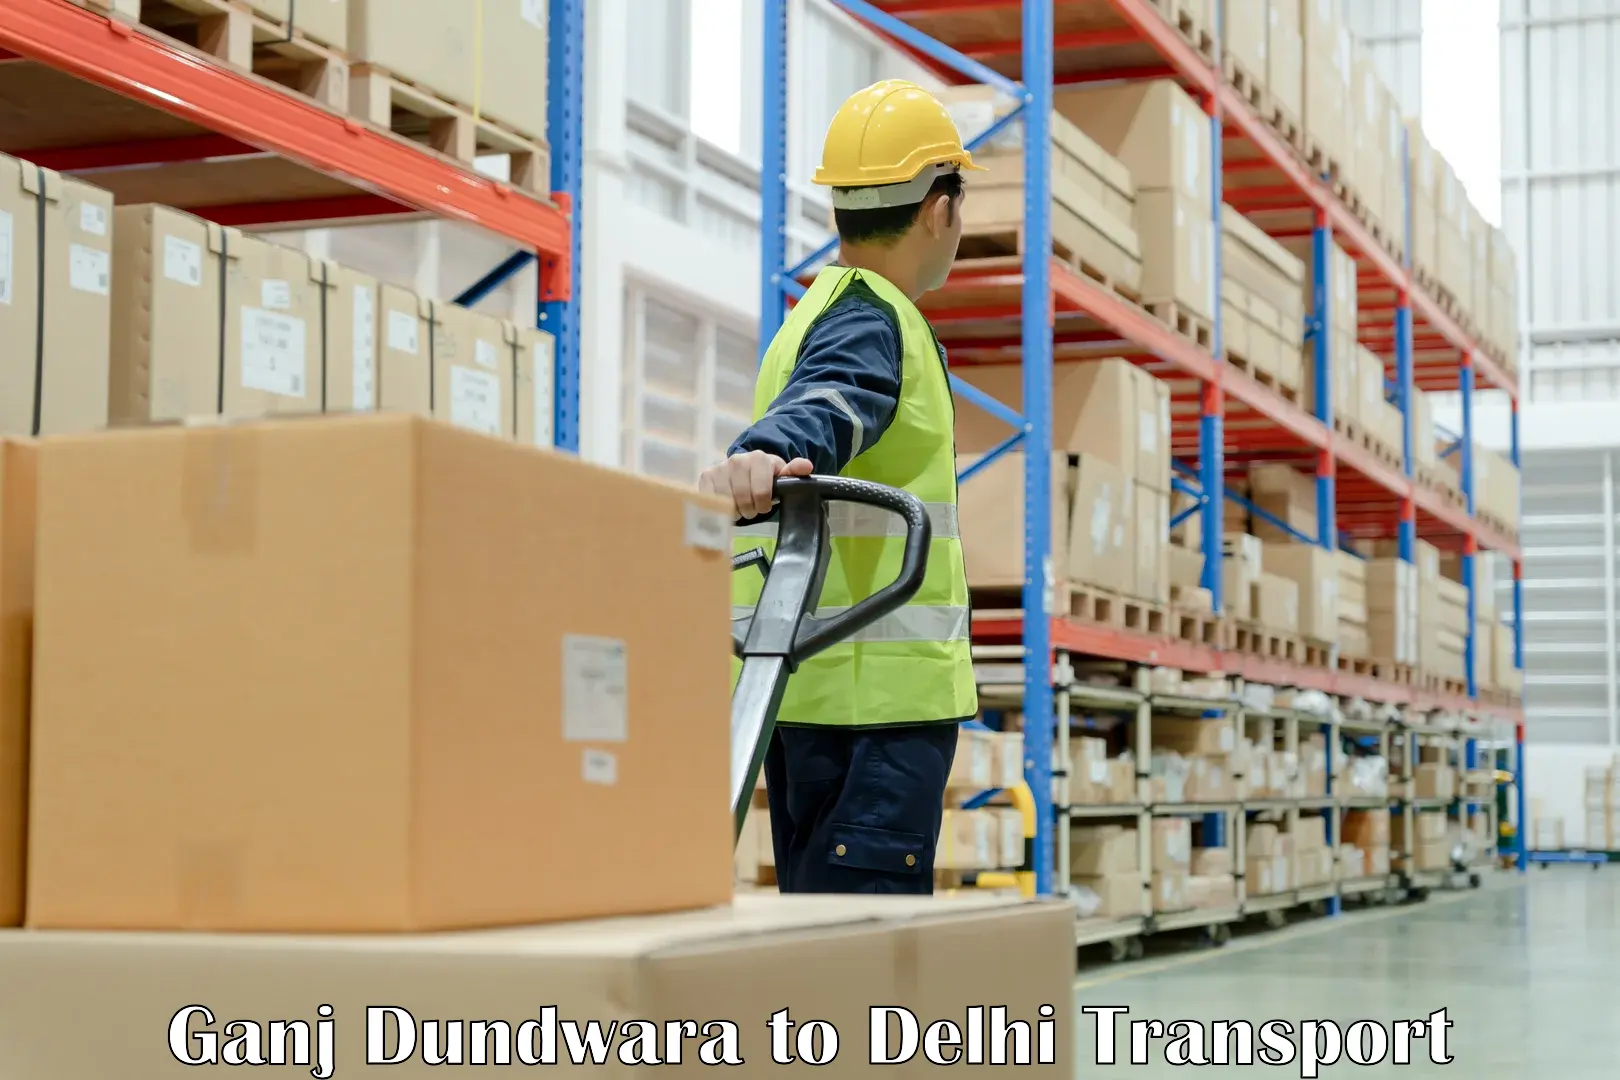 Luggage transport services Ganj Dundwara to Jamia Millia Islamia New Delhi